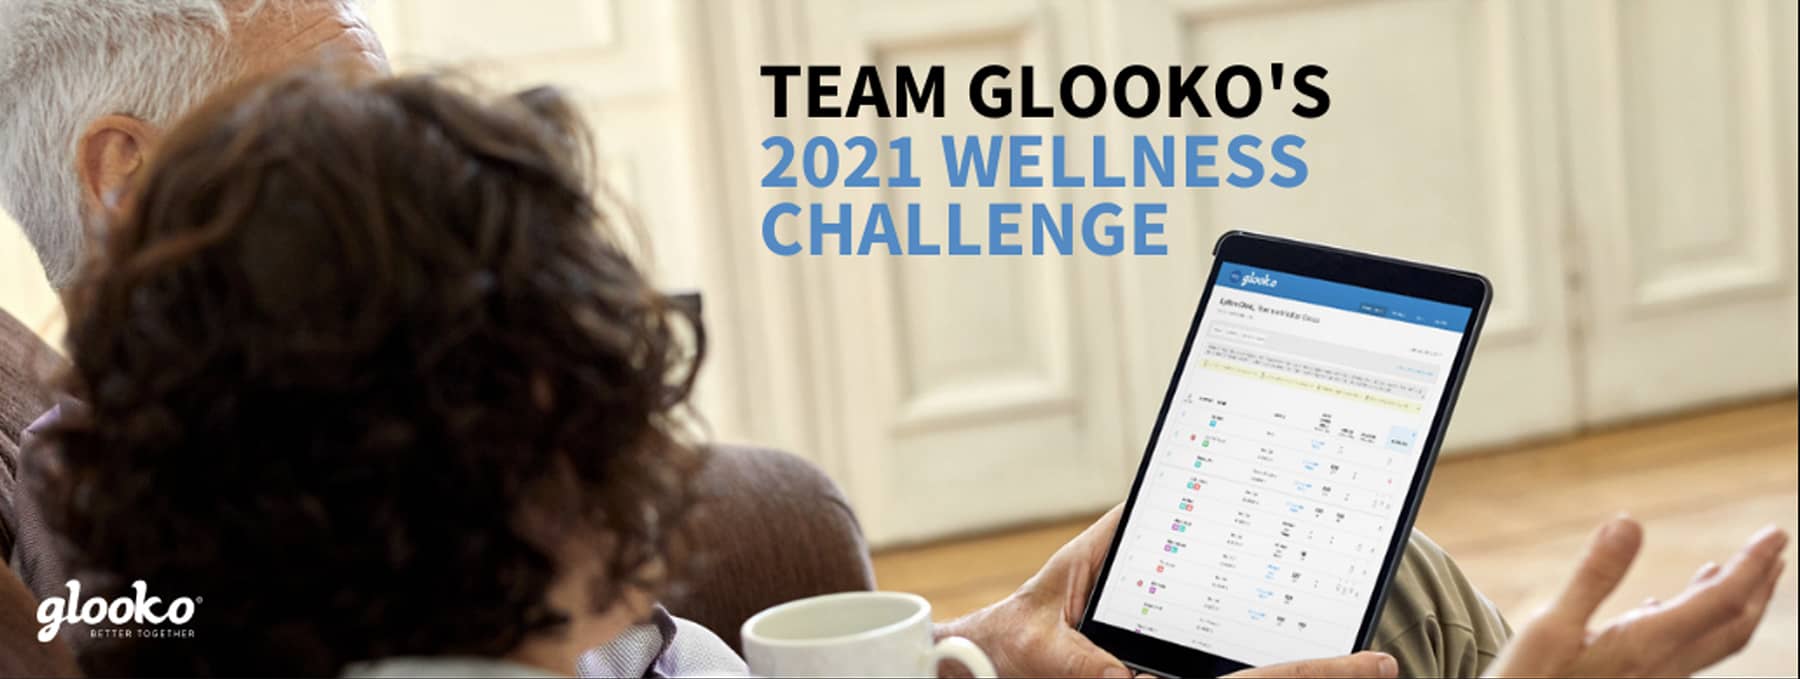 Team Glooko’s 2021 Wellness Challenge